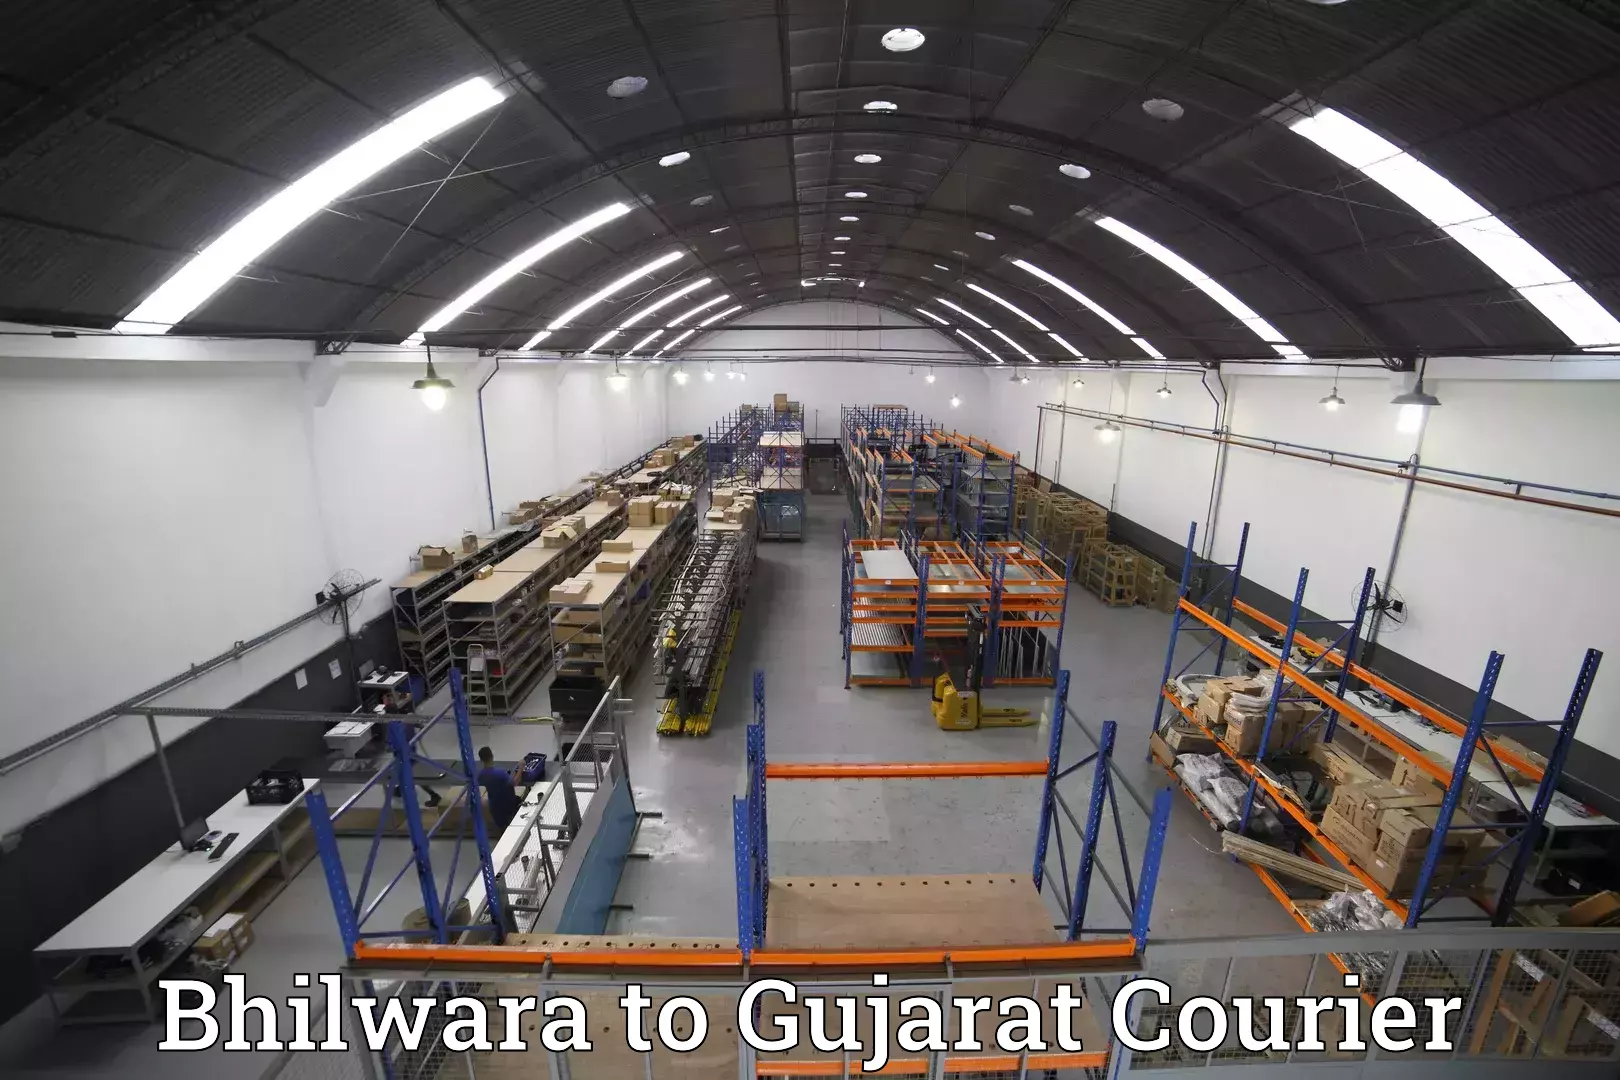 Baggage transport network Bhilwara to Gujarat